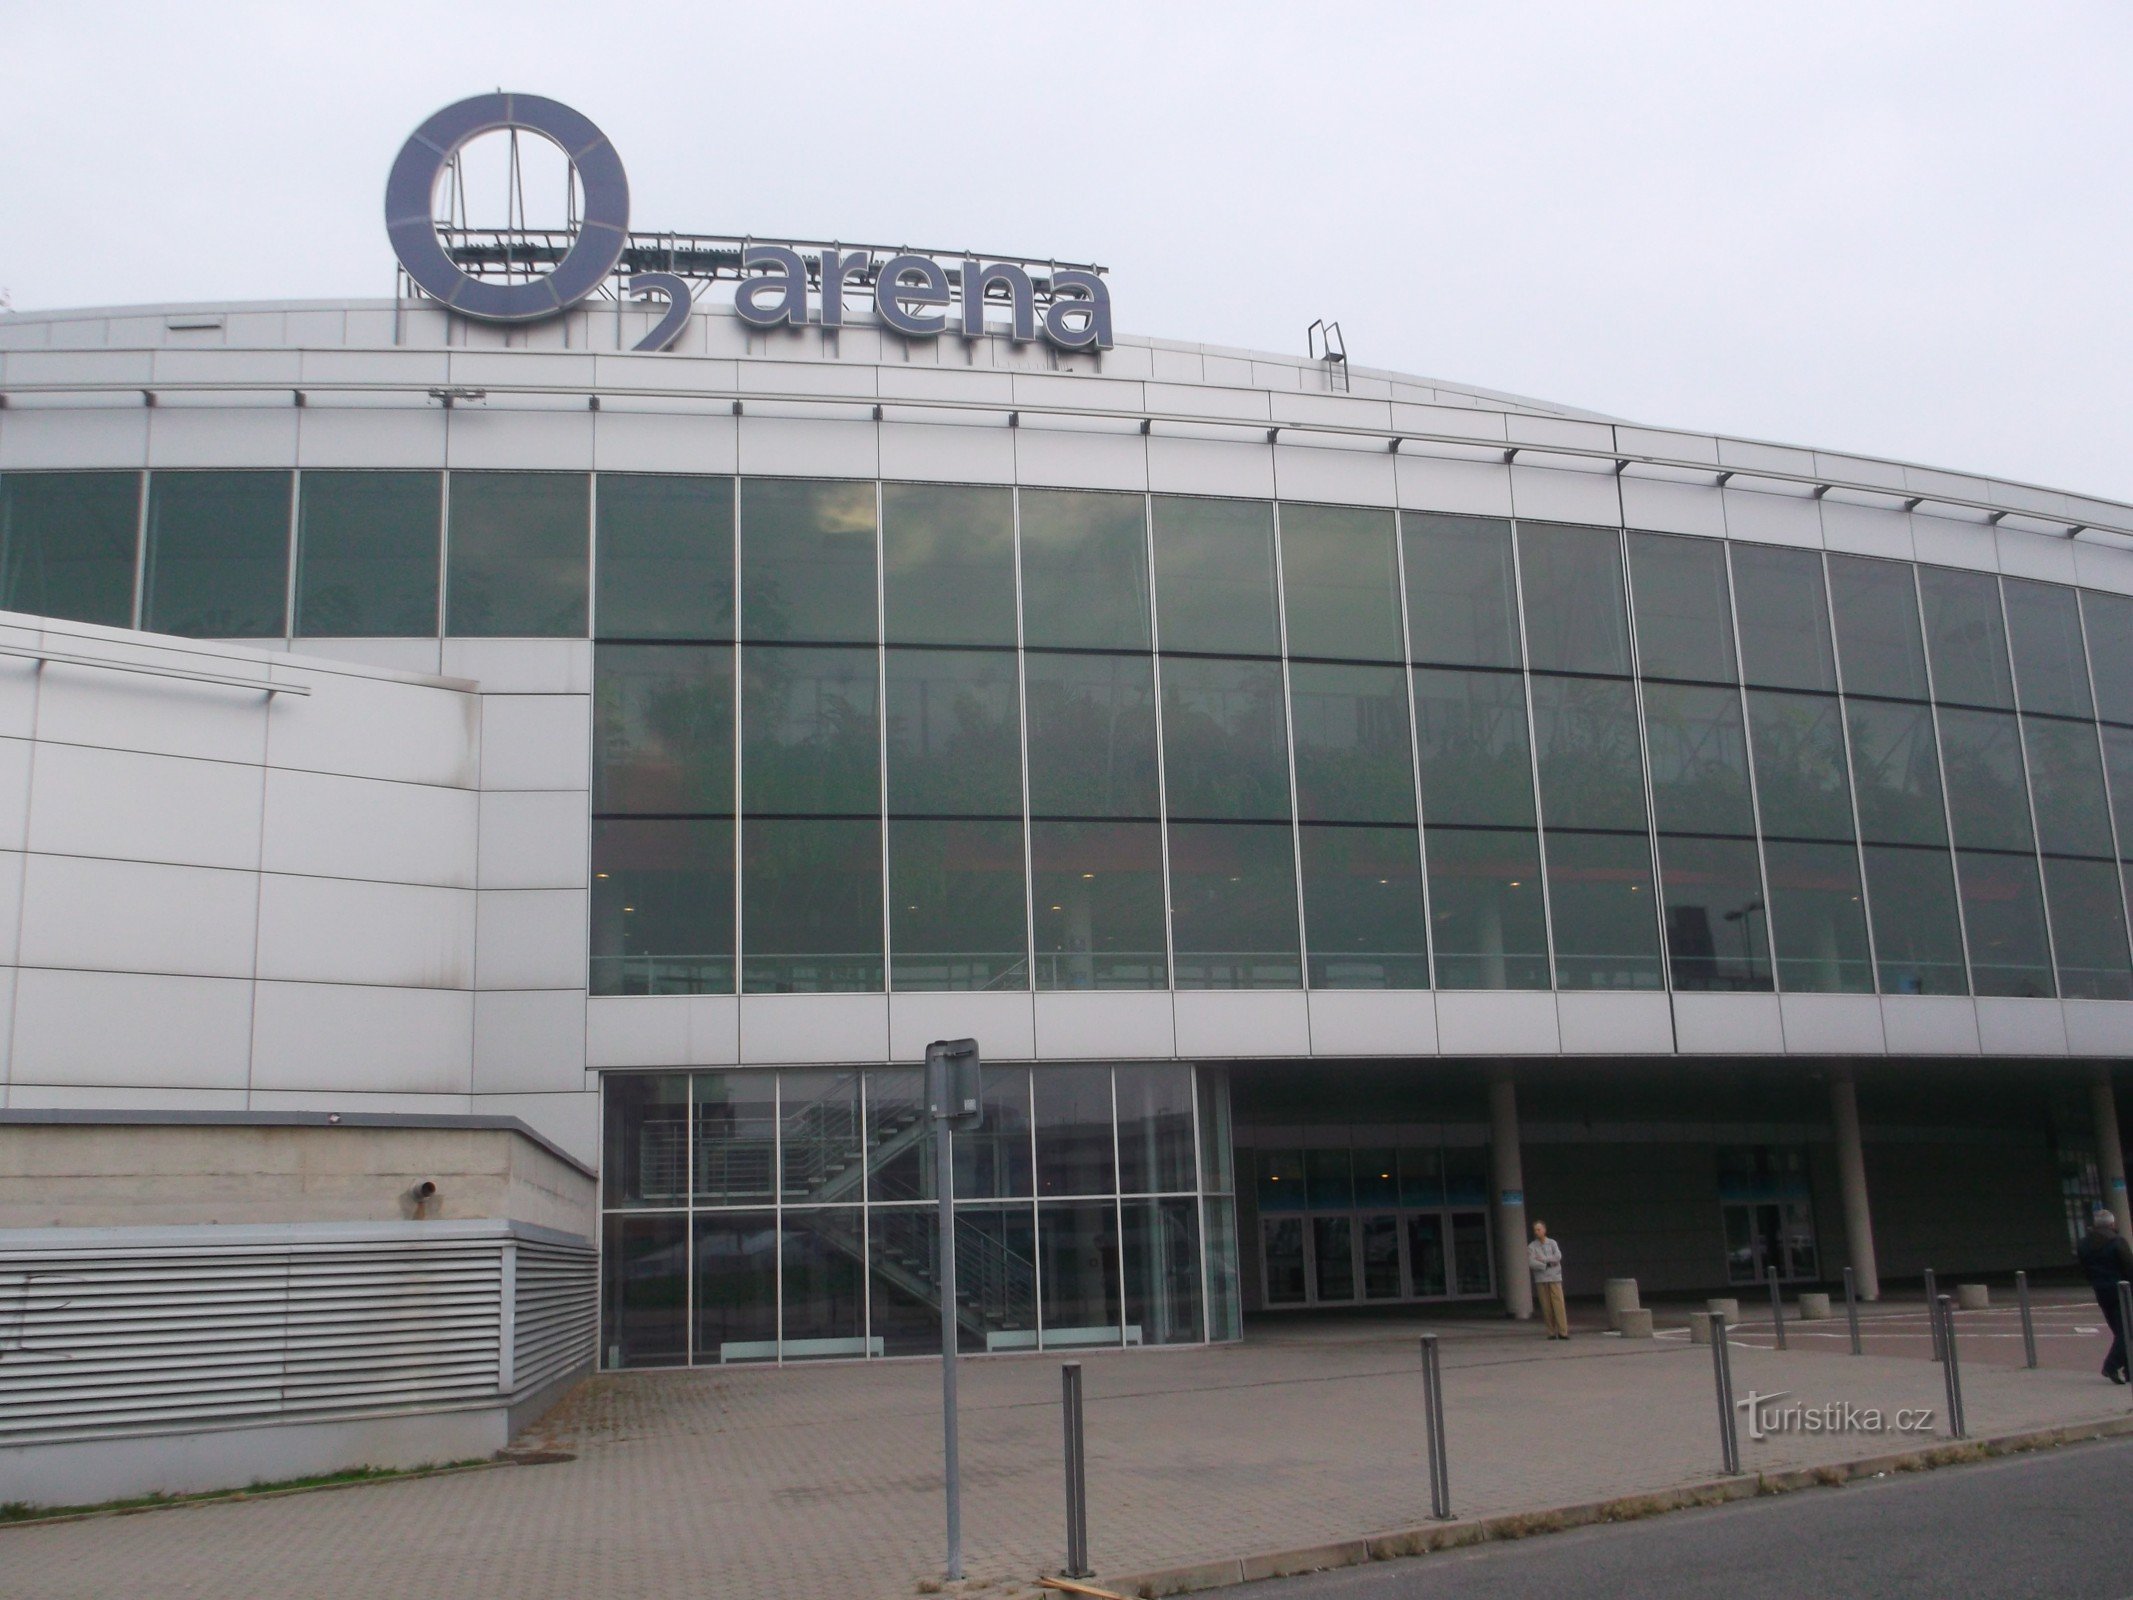 O2-arena